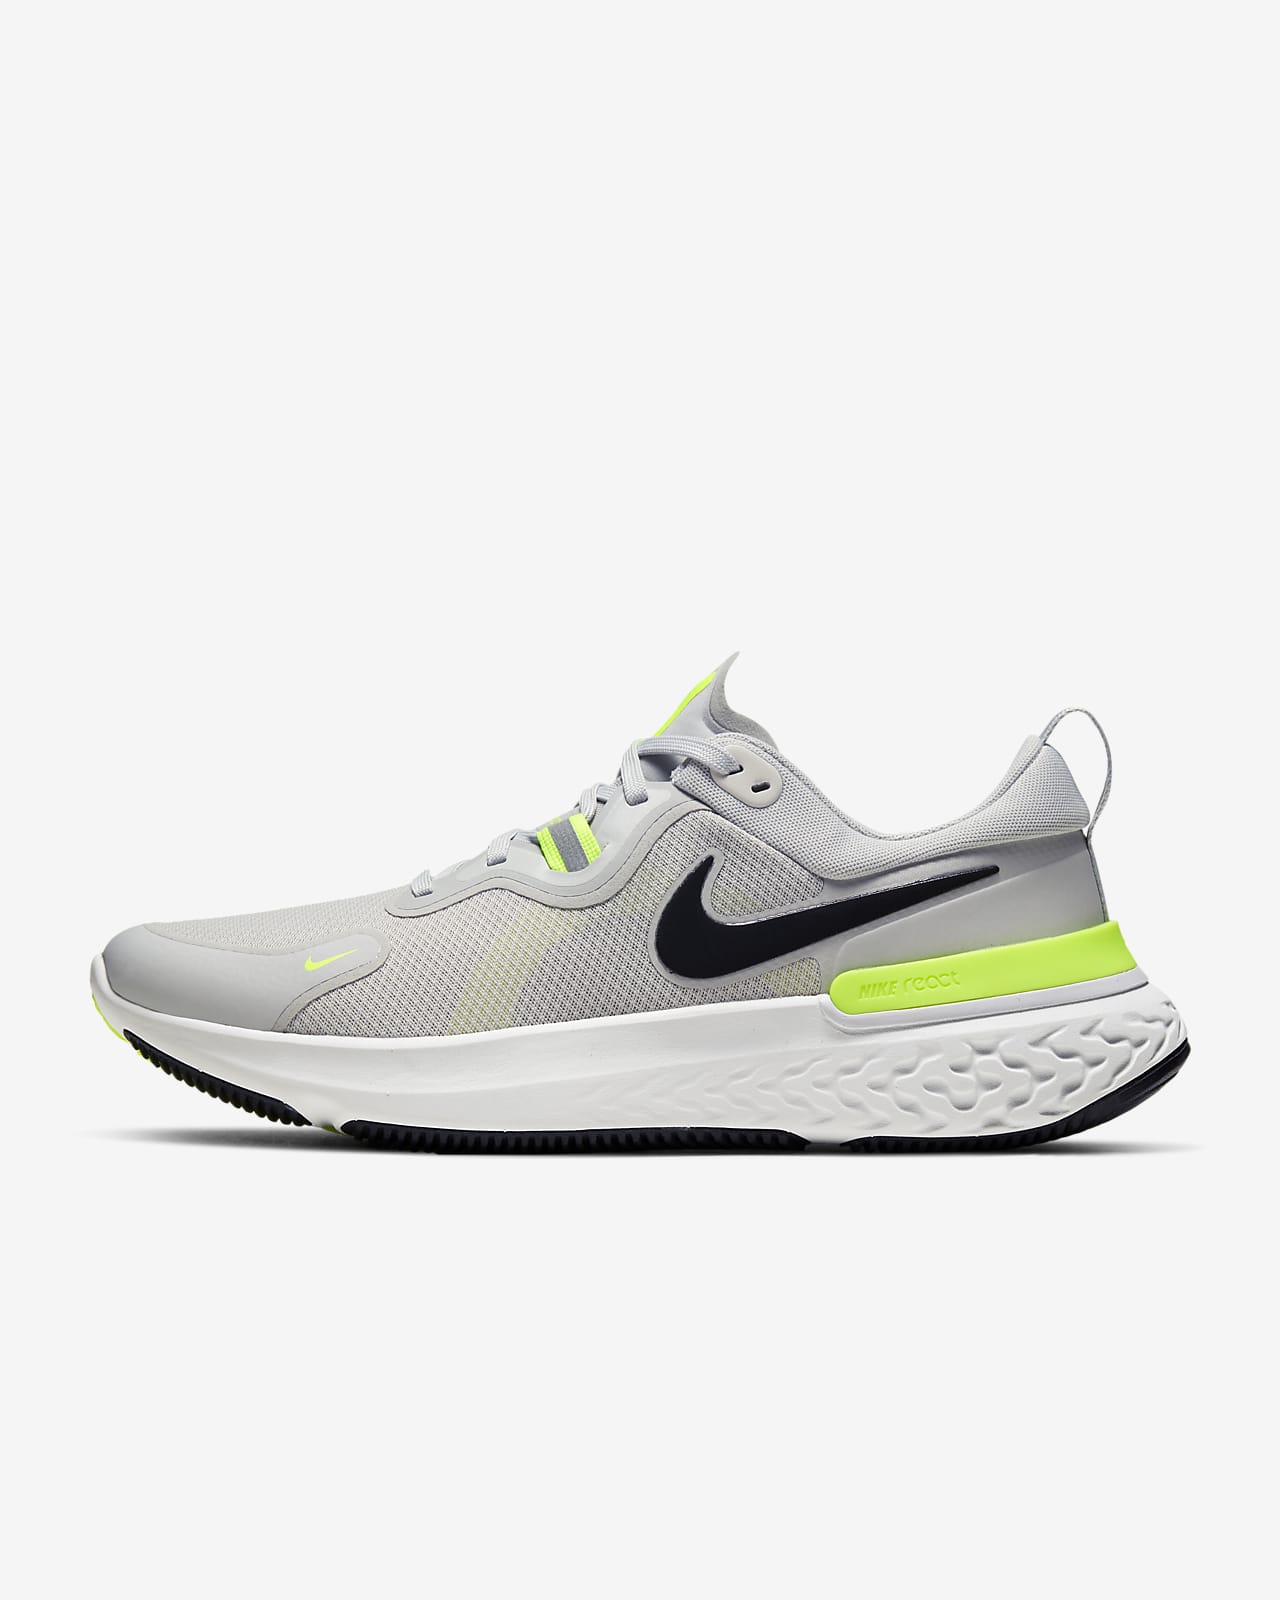 Nike React Miler Men's Road Running Shoes